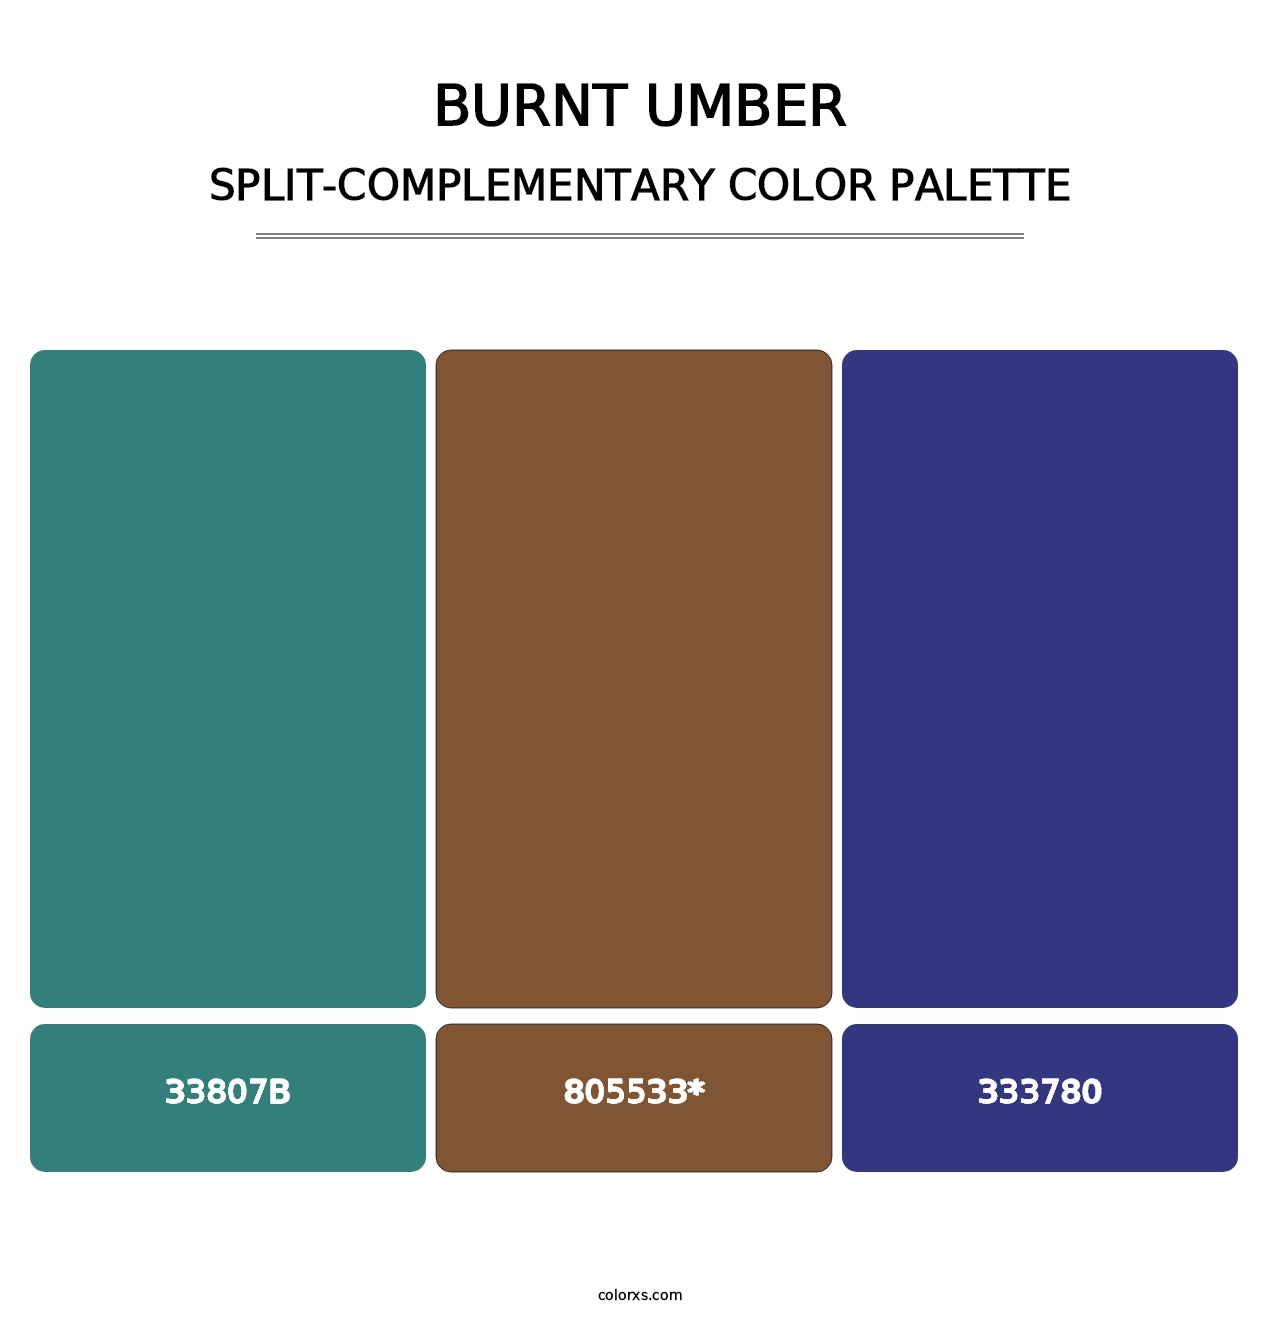 Burnt Umber - Split-Complementary Color Palette